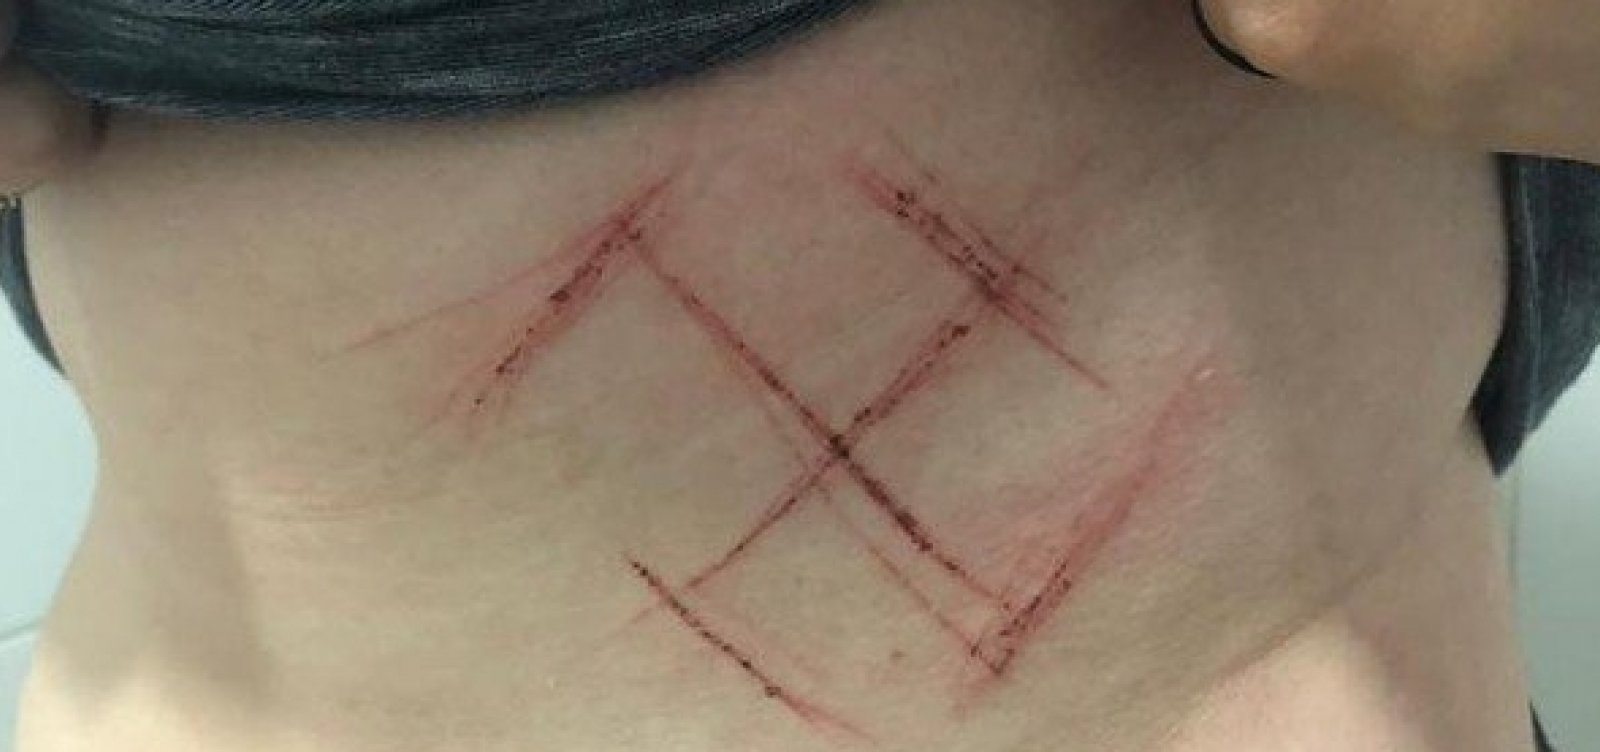 Jovem de 19 anos é agredida e marcada com canivete por vestir camiseta com “Ele Não”